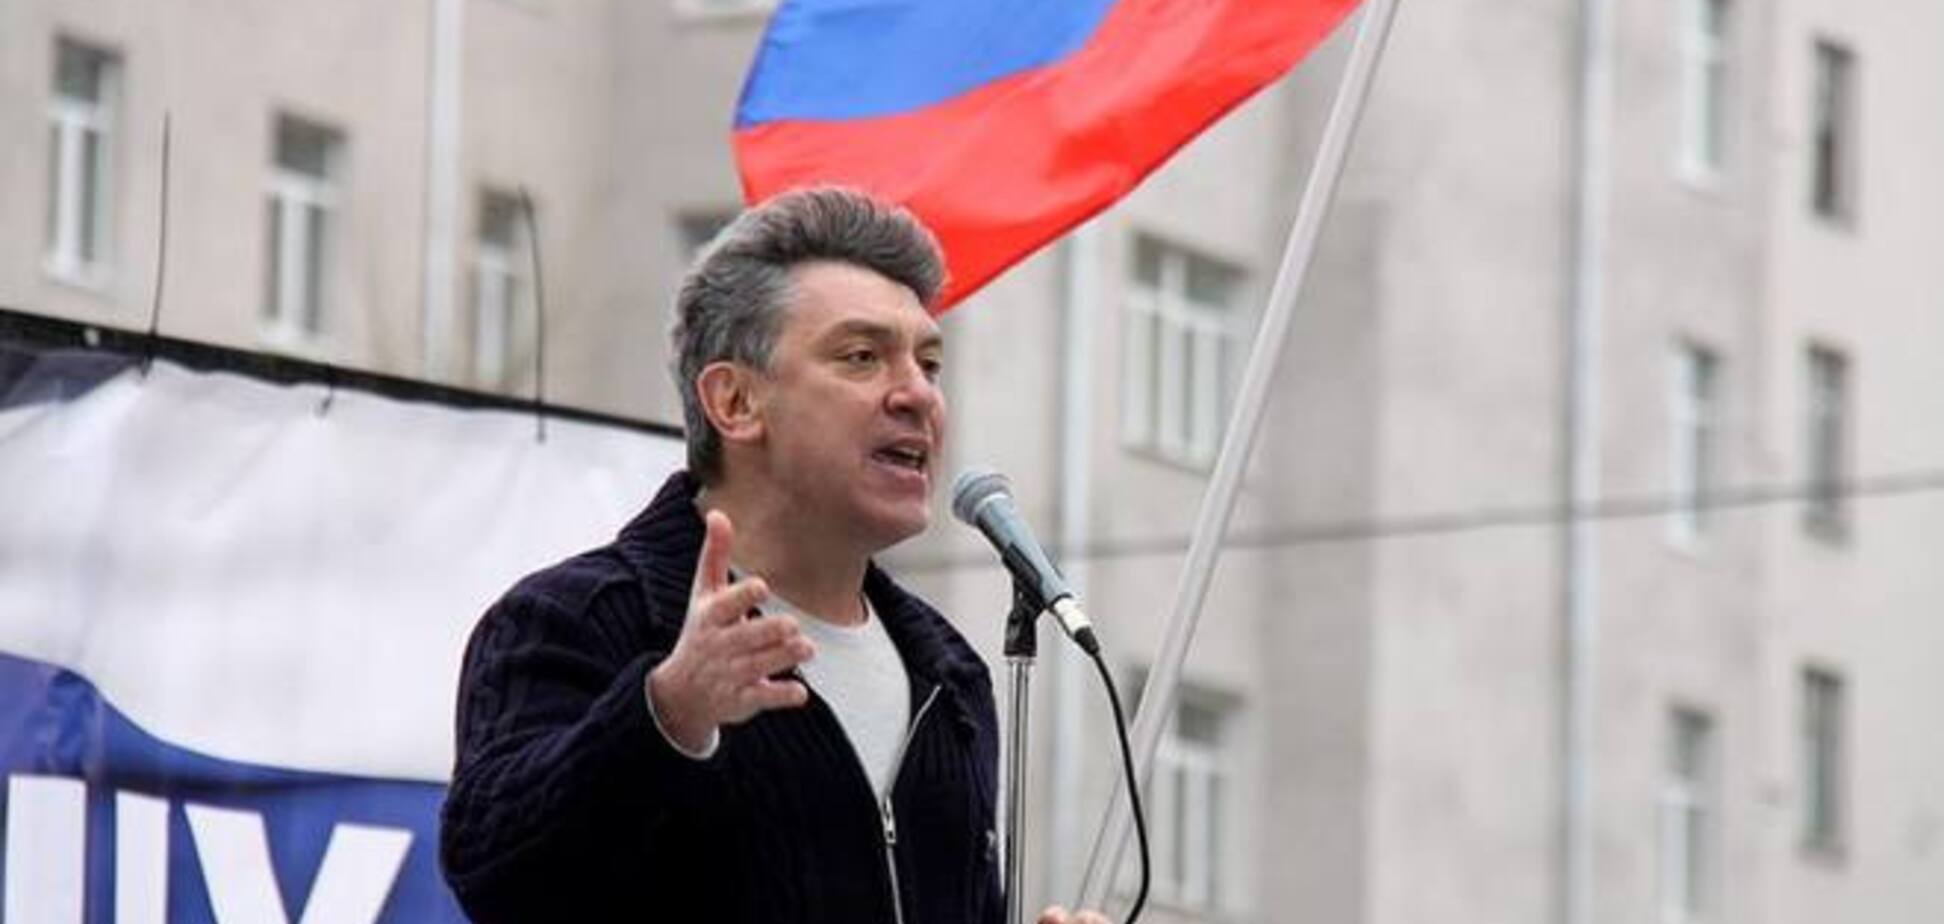 Кадыров открестился от боевиков из-за угрозы новых санкций против друзей Путина - Немцов